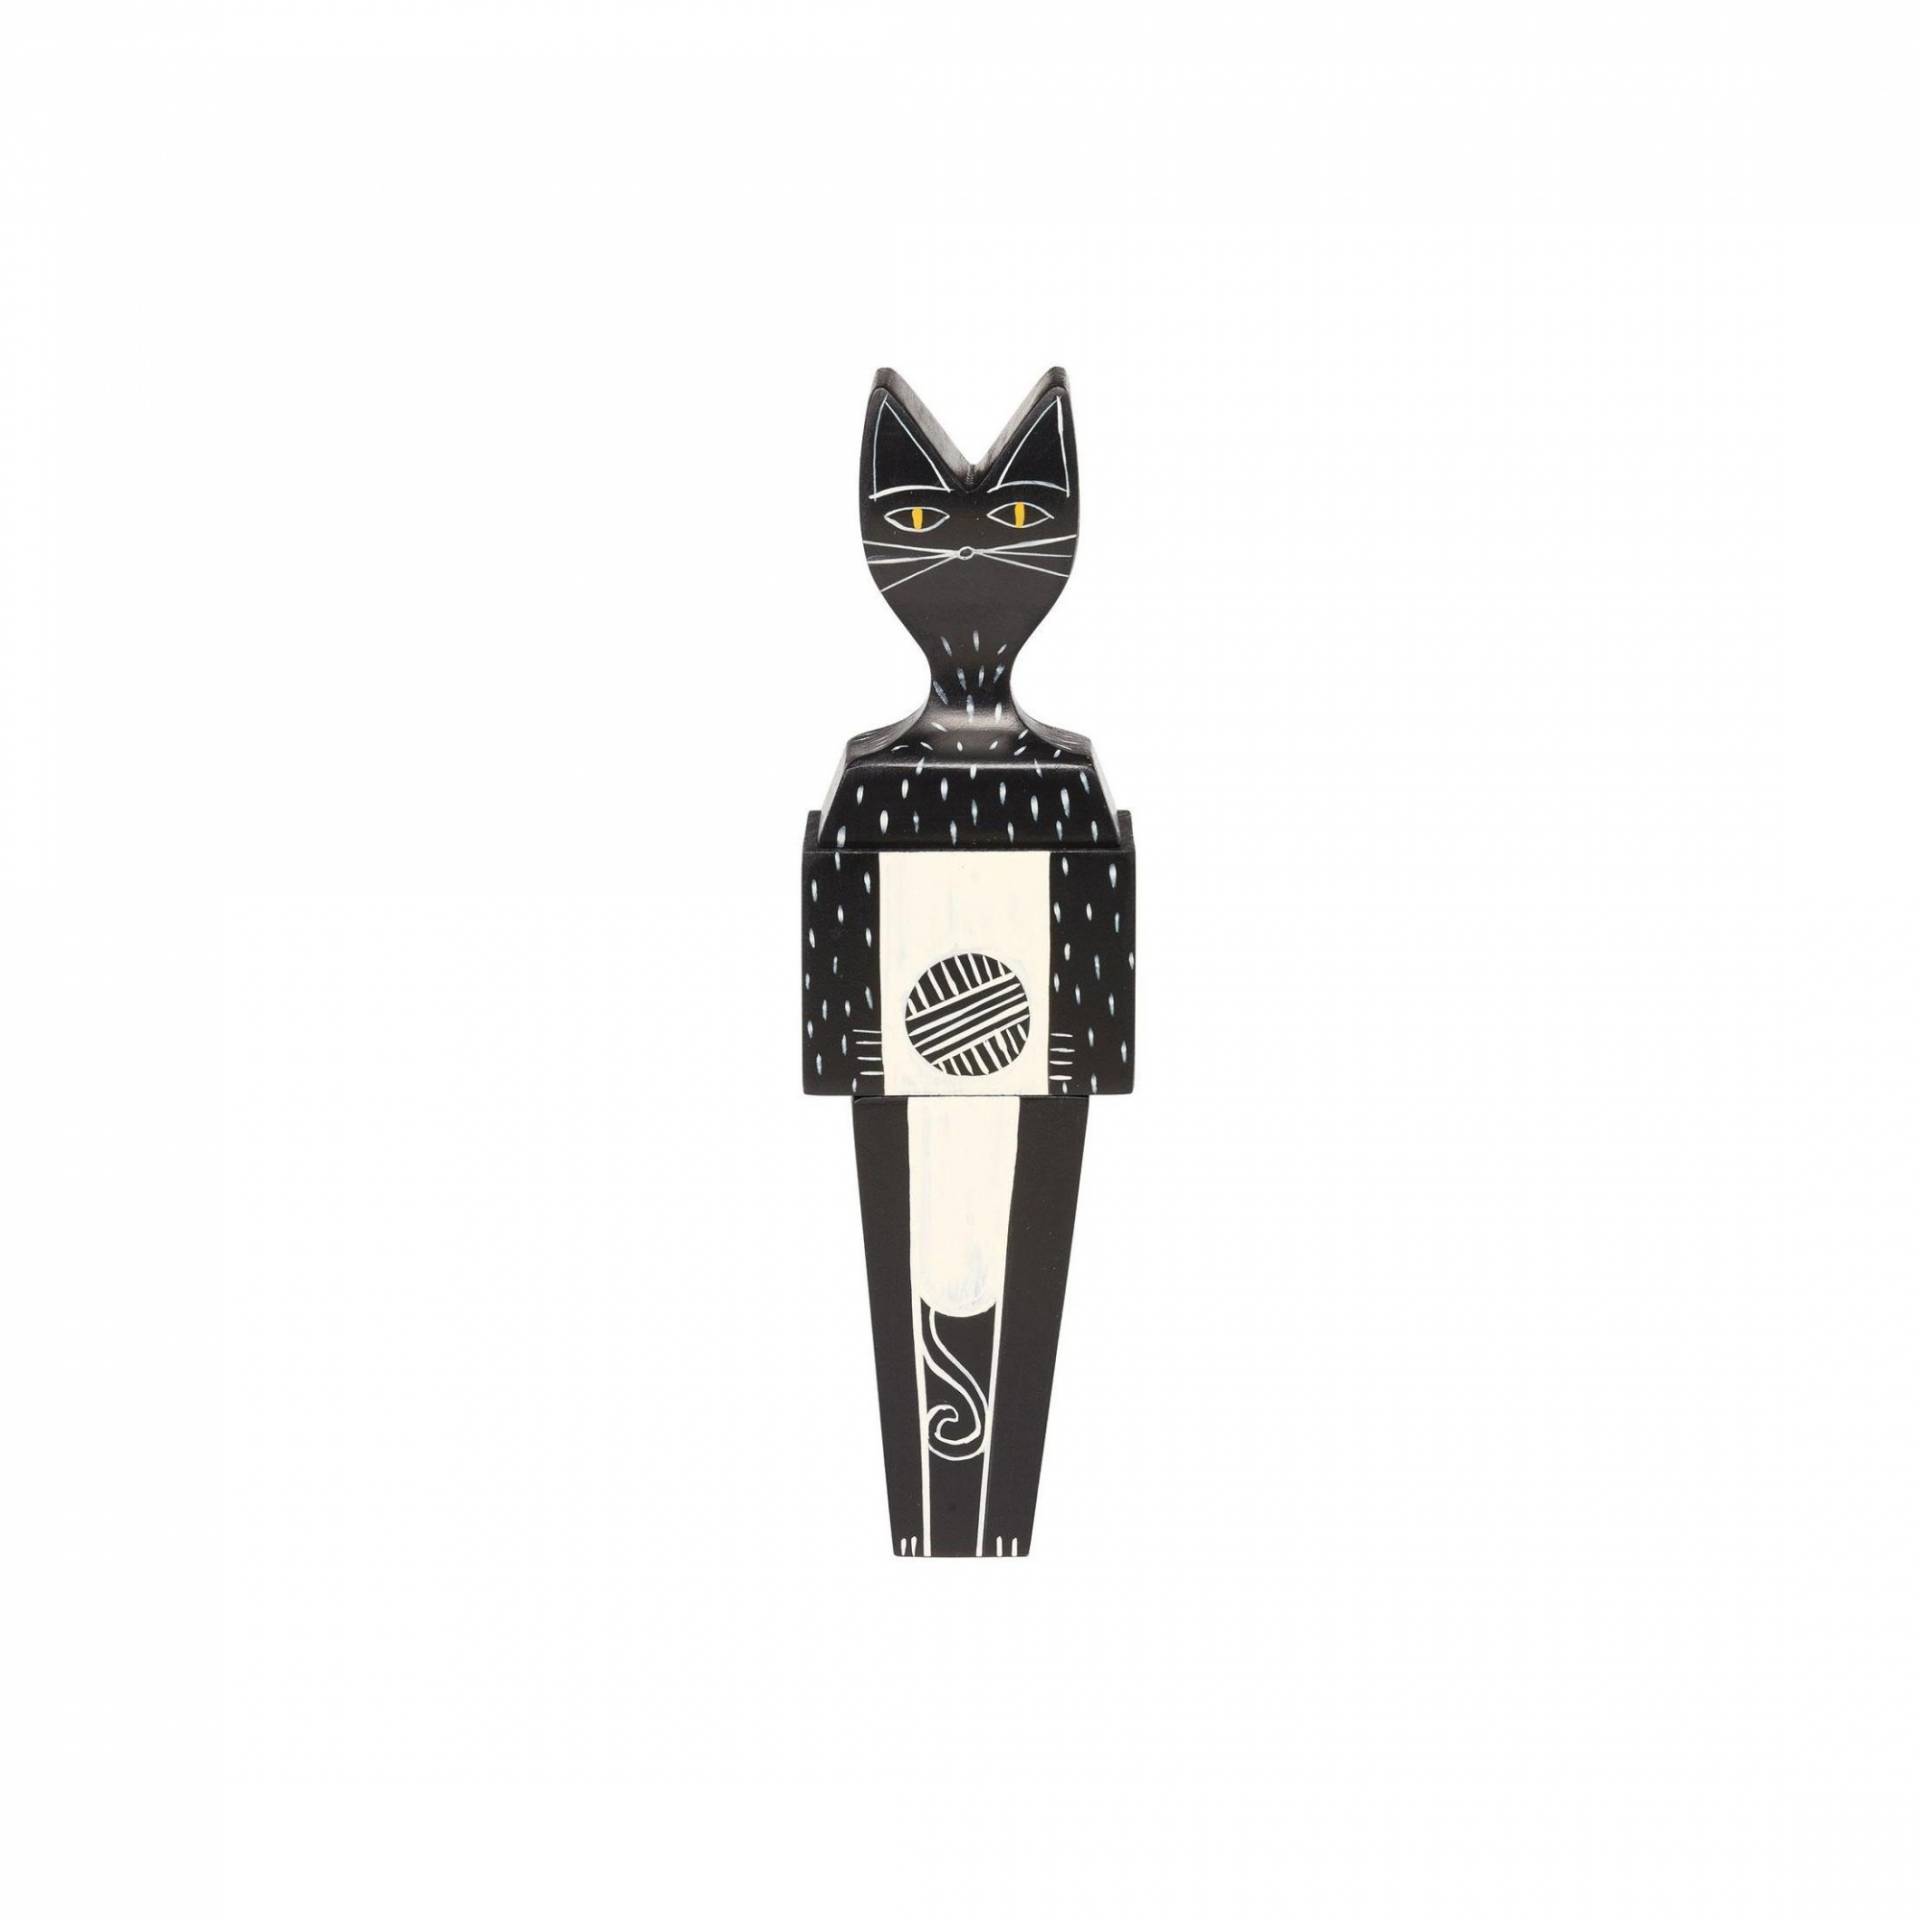 Vitra - Wooden Doll Cat Holzpuppe klein - schwarz/weiß/handbemalt/LxBxH 4.8x3.6x17.1cm von Vitra